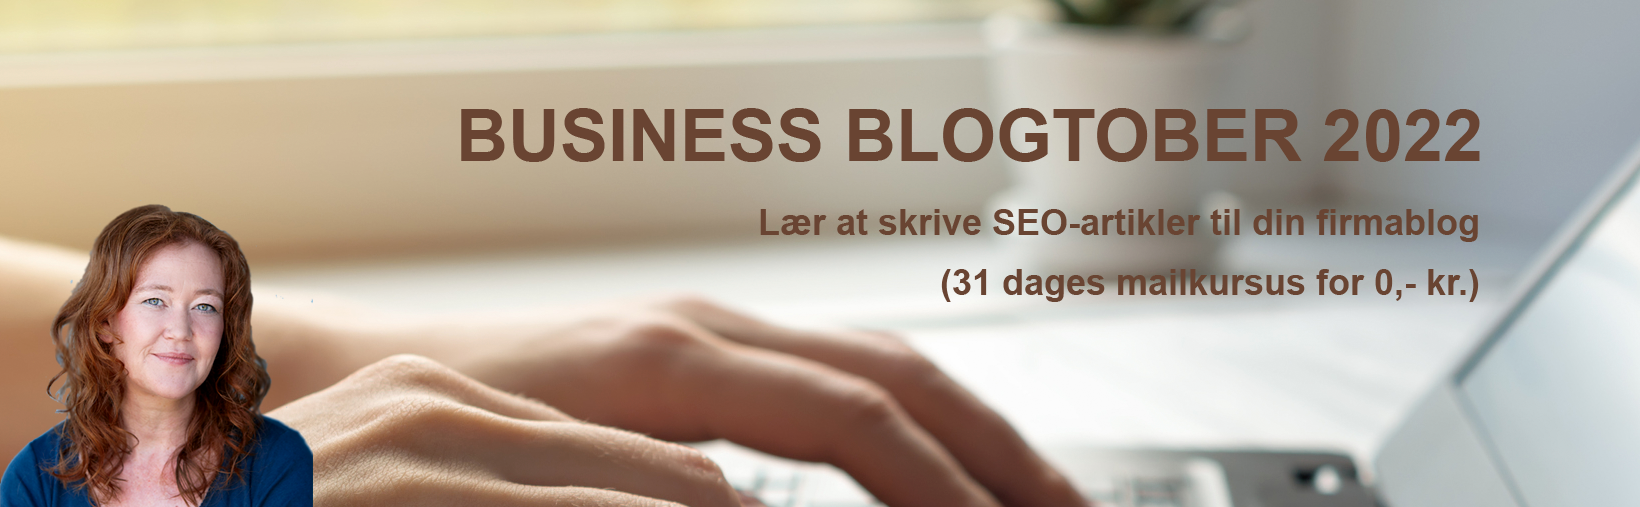 Business Blogtober 2022